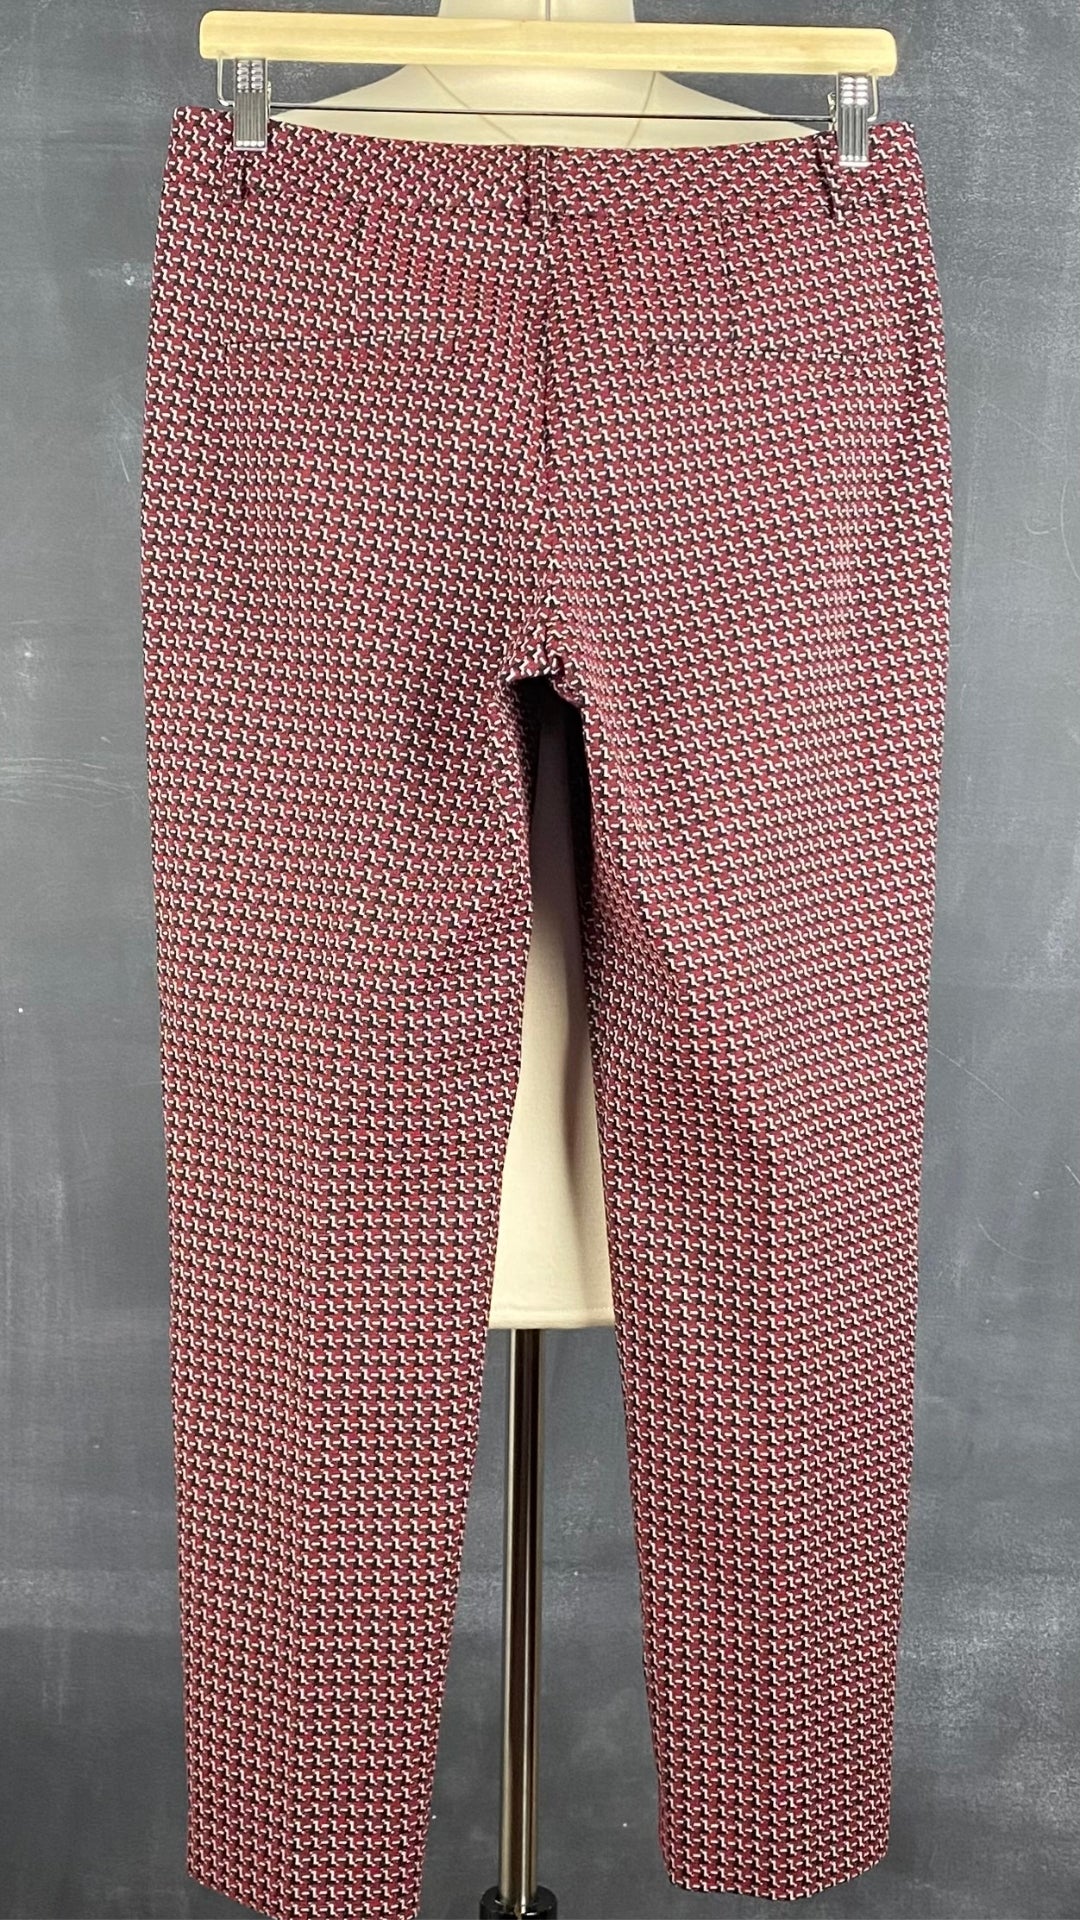 Pantalon coupe droite jacquard à motifs rouge, noir, blanc, Judith & Charles, taille 4. Vue de dos.